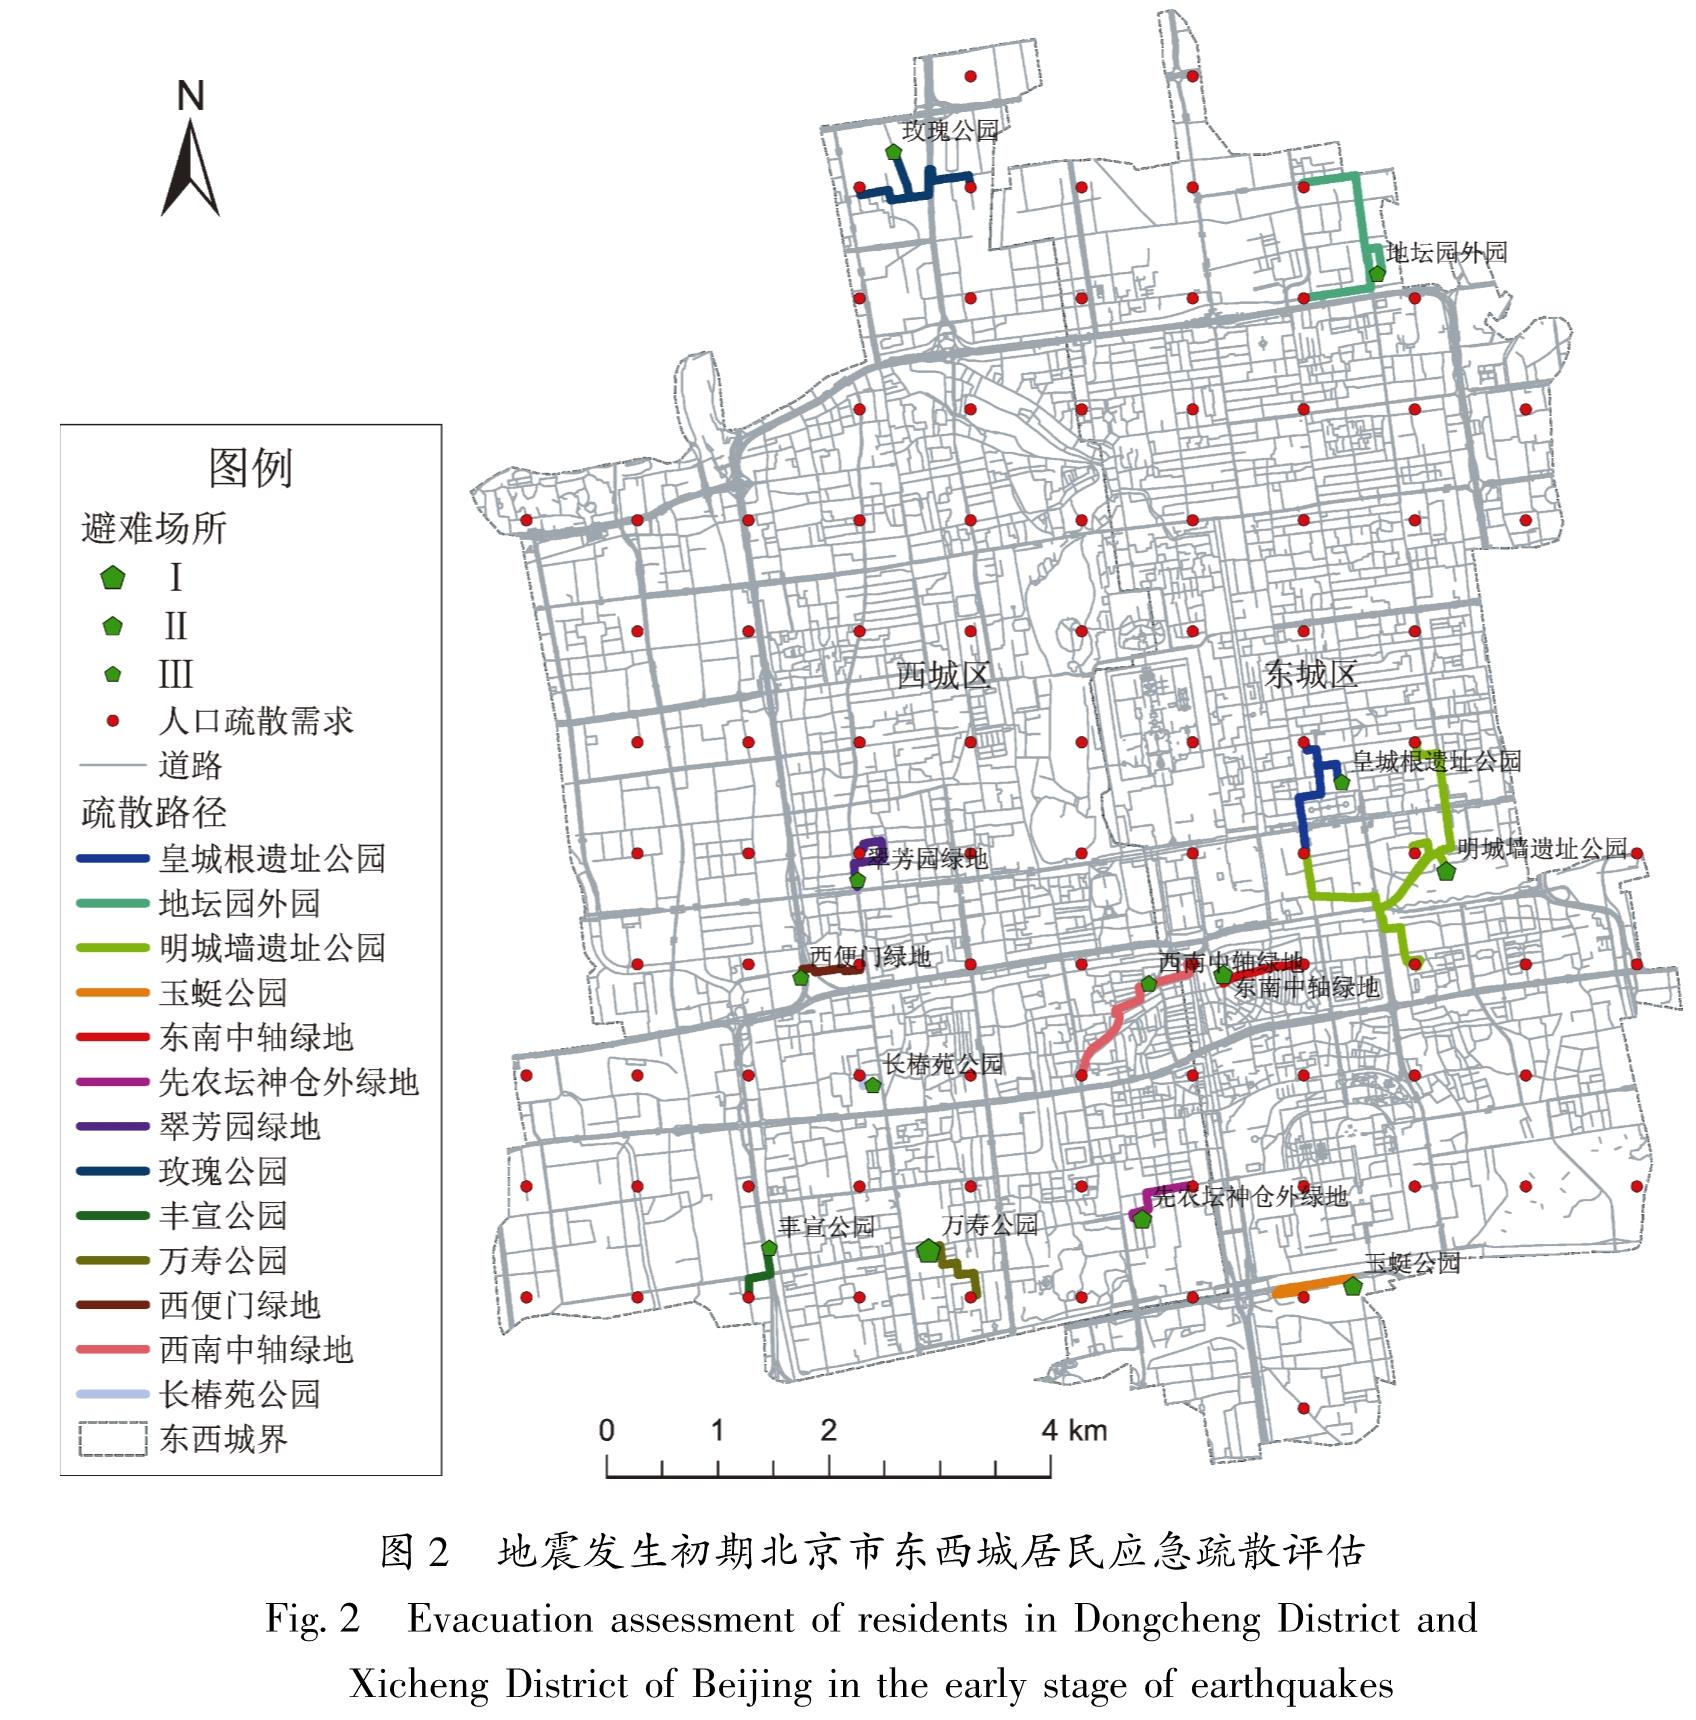 图2 地震发生初期北京市东西城居民应急疏散评估<br/>Fig.2 Evacuation assessment of residents in Dongcheng District and Xicheng District of Beijing in the early stage of earthquakes